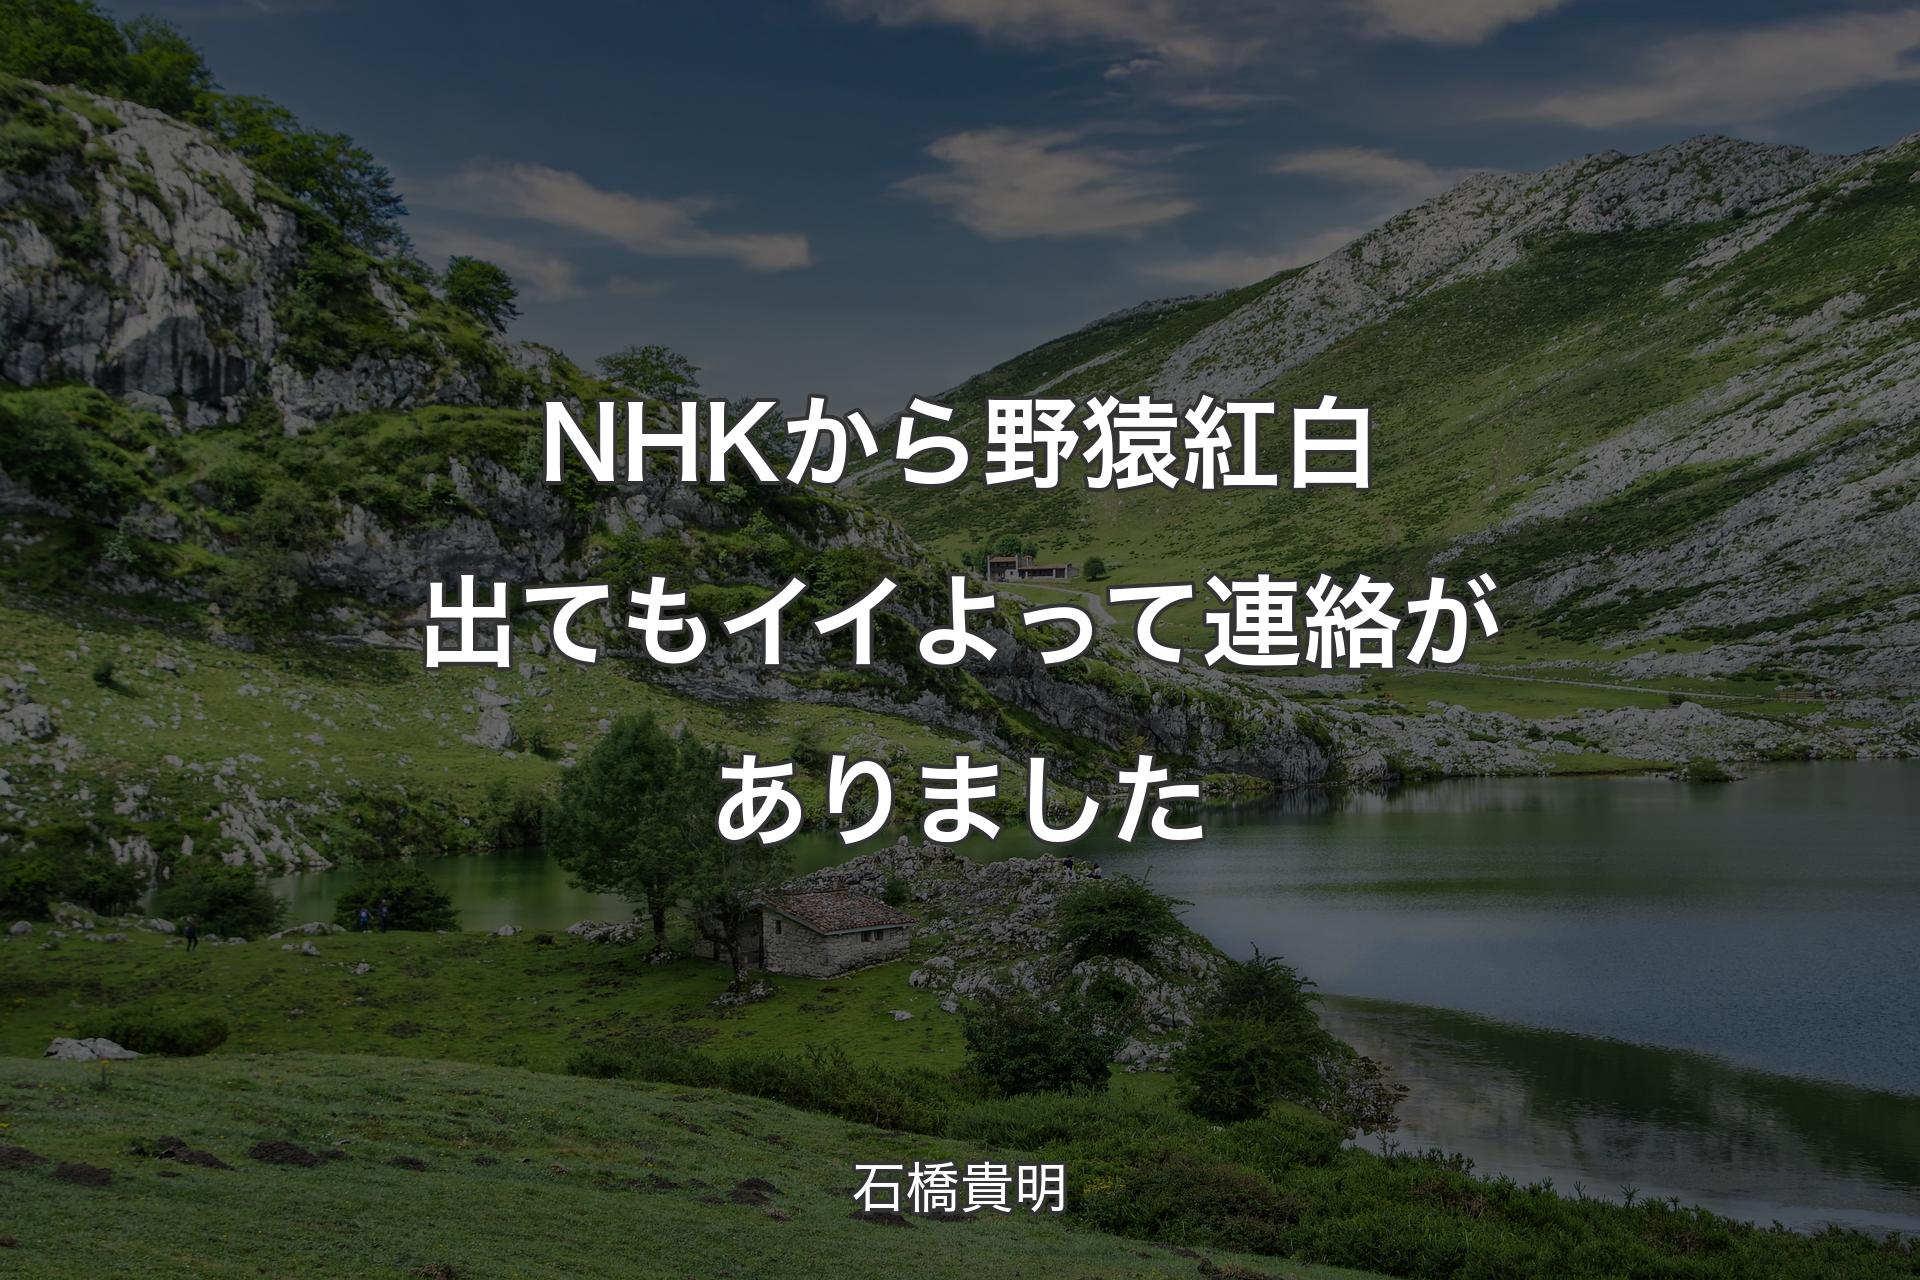 【背景1】NHKから野猿紅白出てもイイよって連絡がありました - 石橋貴明